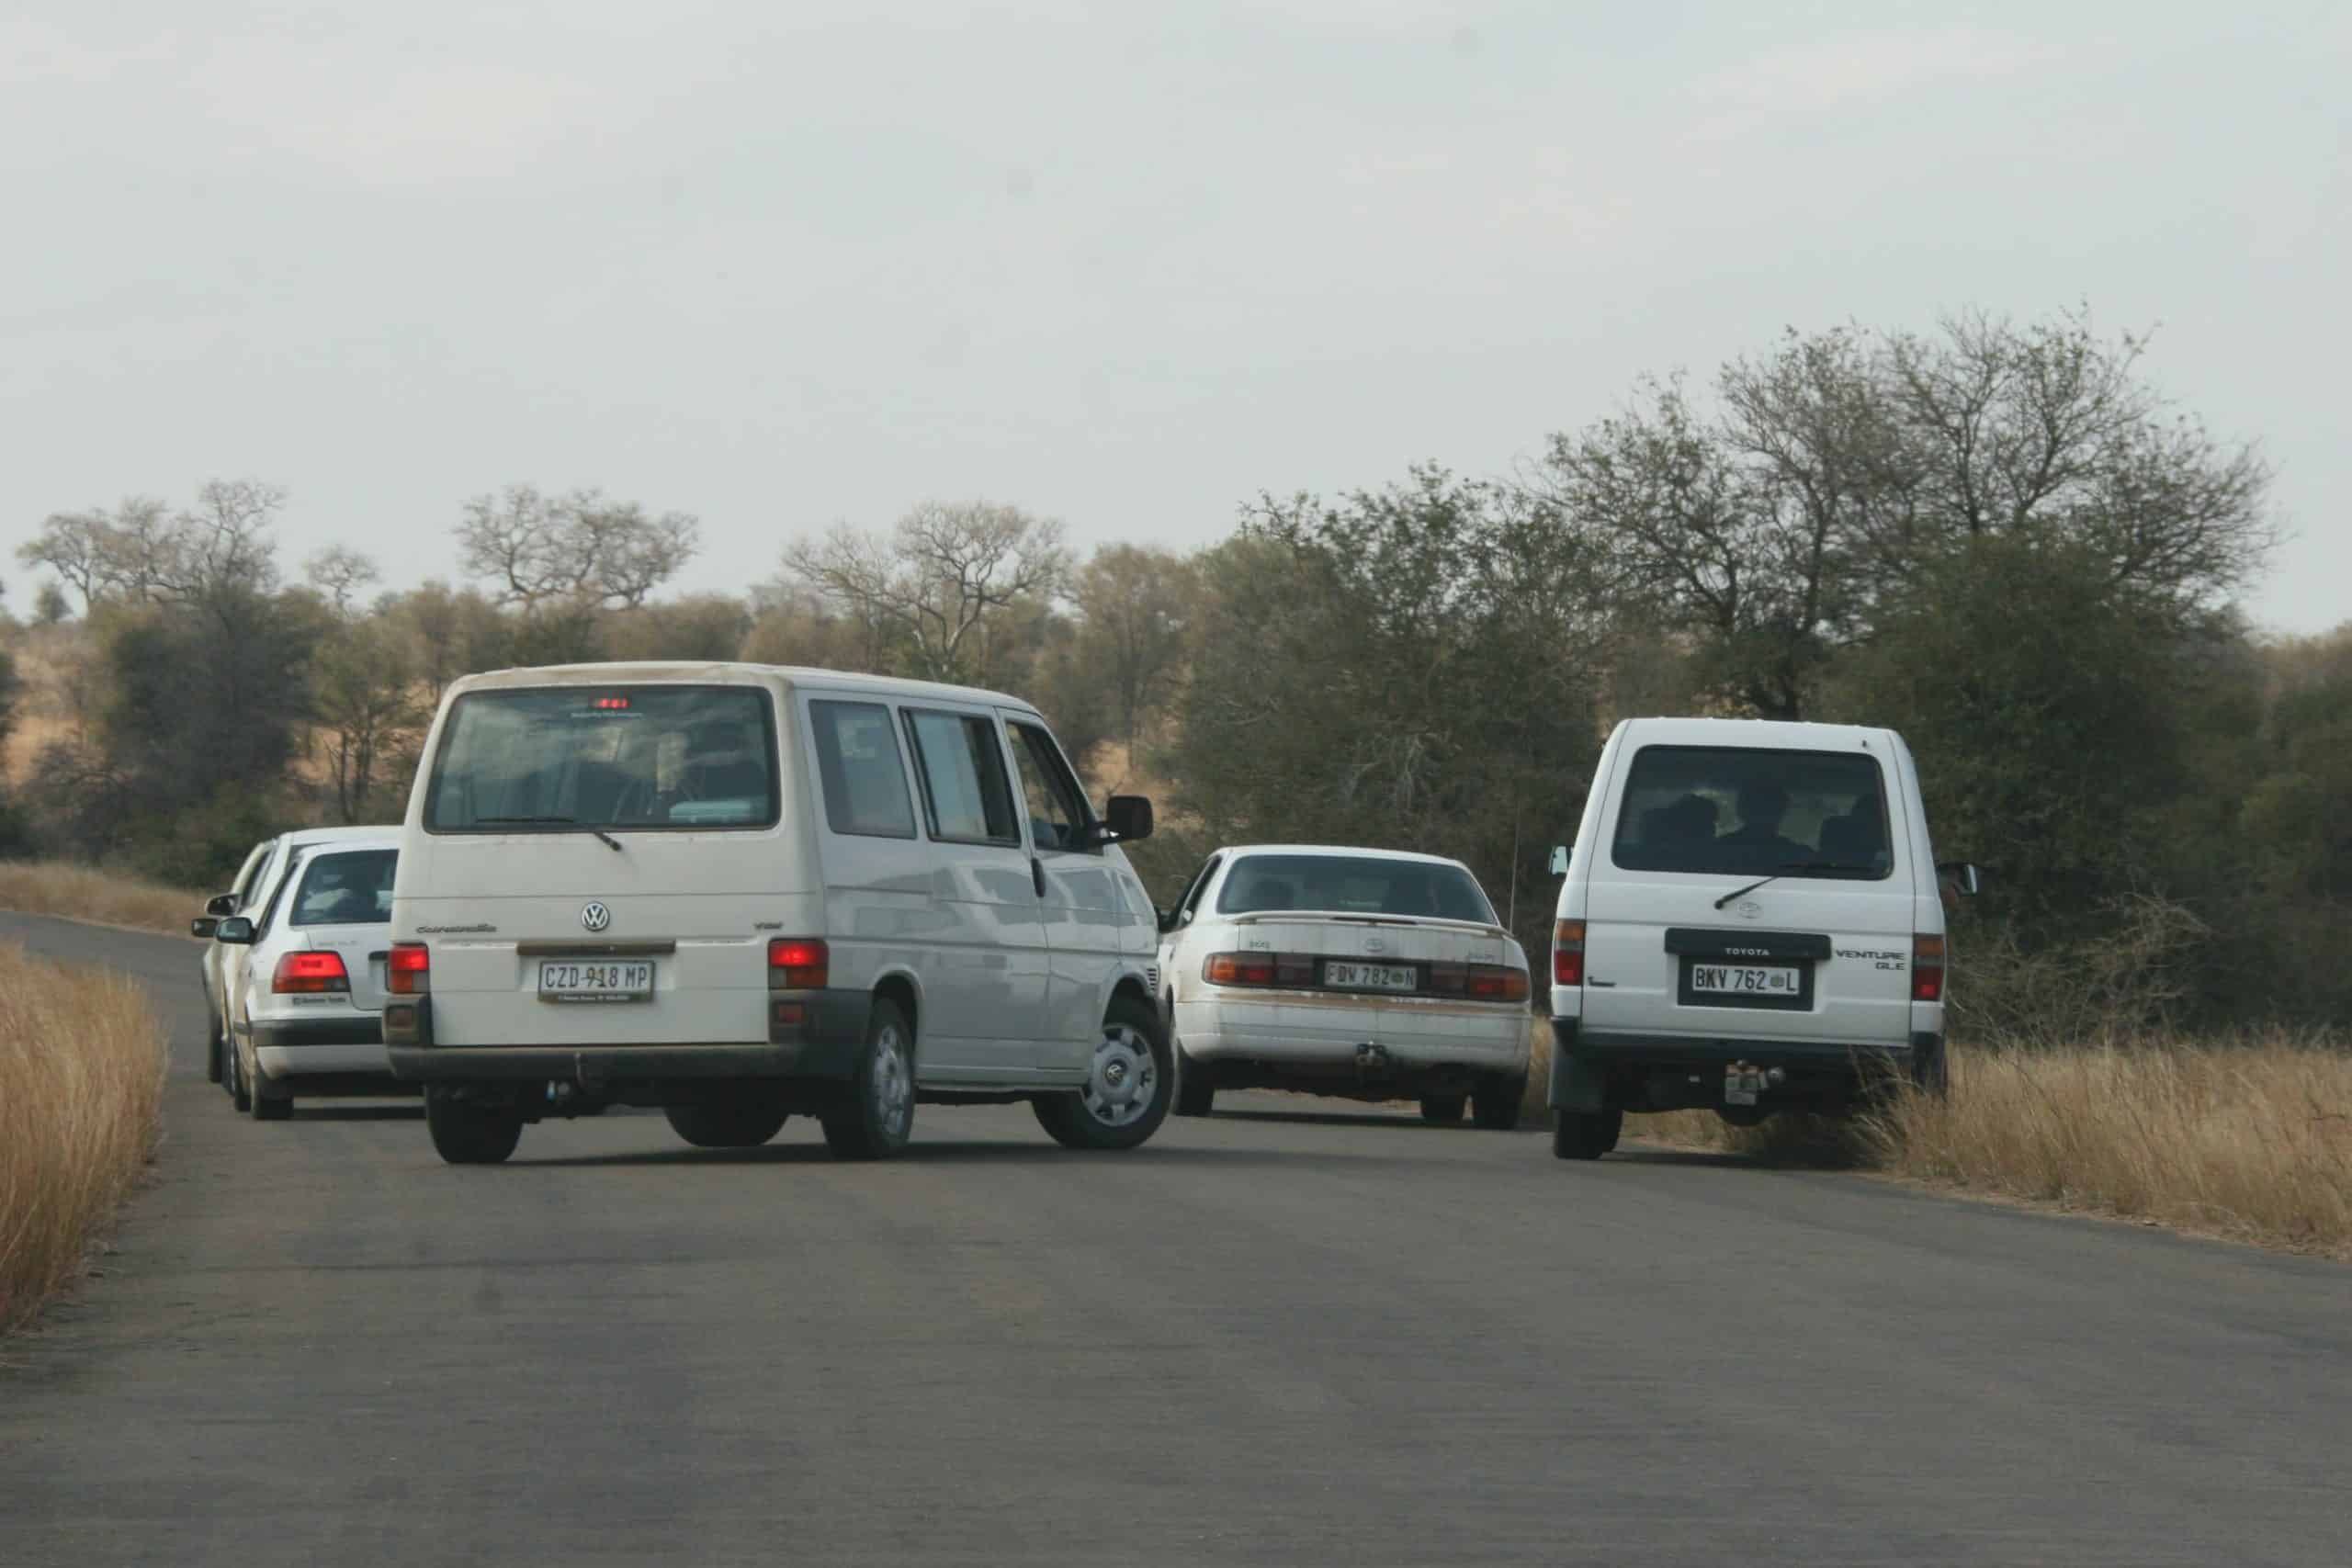 Traffic on Kruger sighting